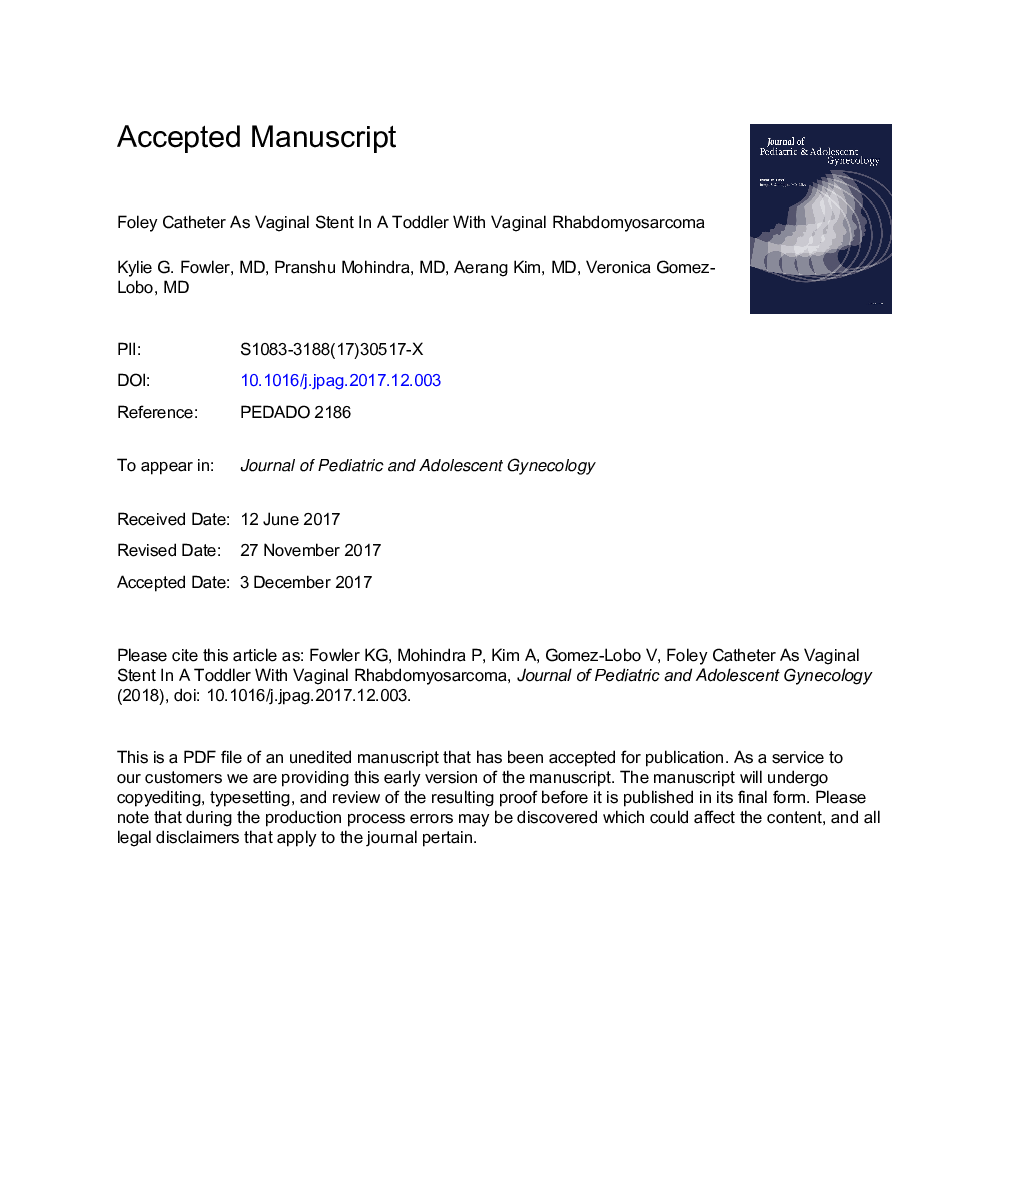 کاتتر فولی به عنوان یک استنت واژن در یک کودک نوپا با رابدومیوسارکوم واژینال 